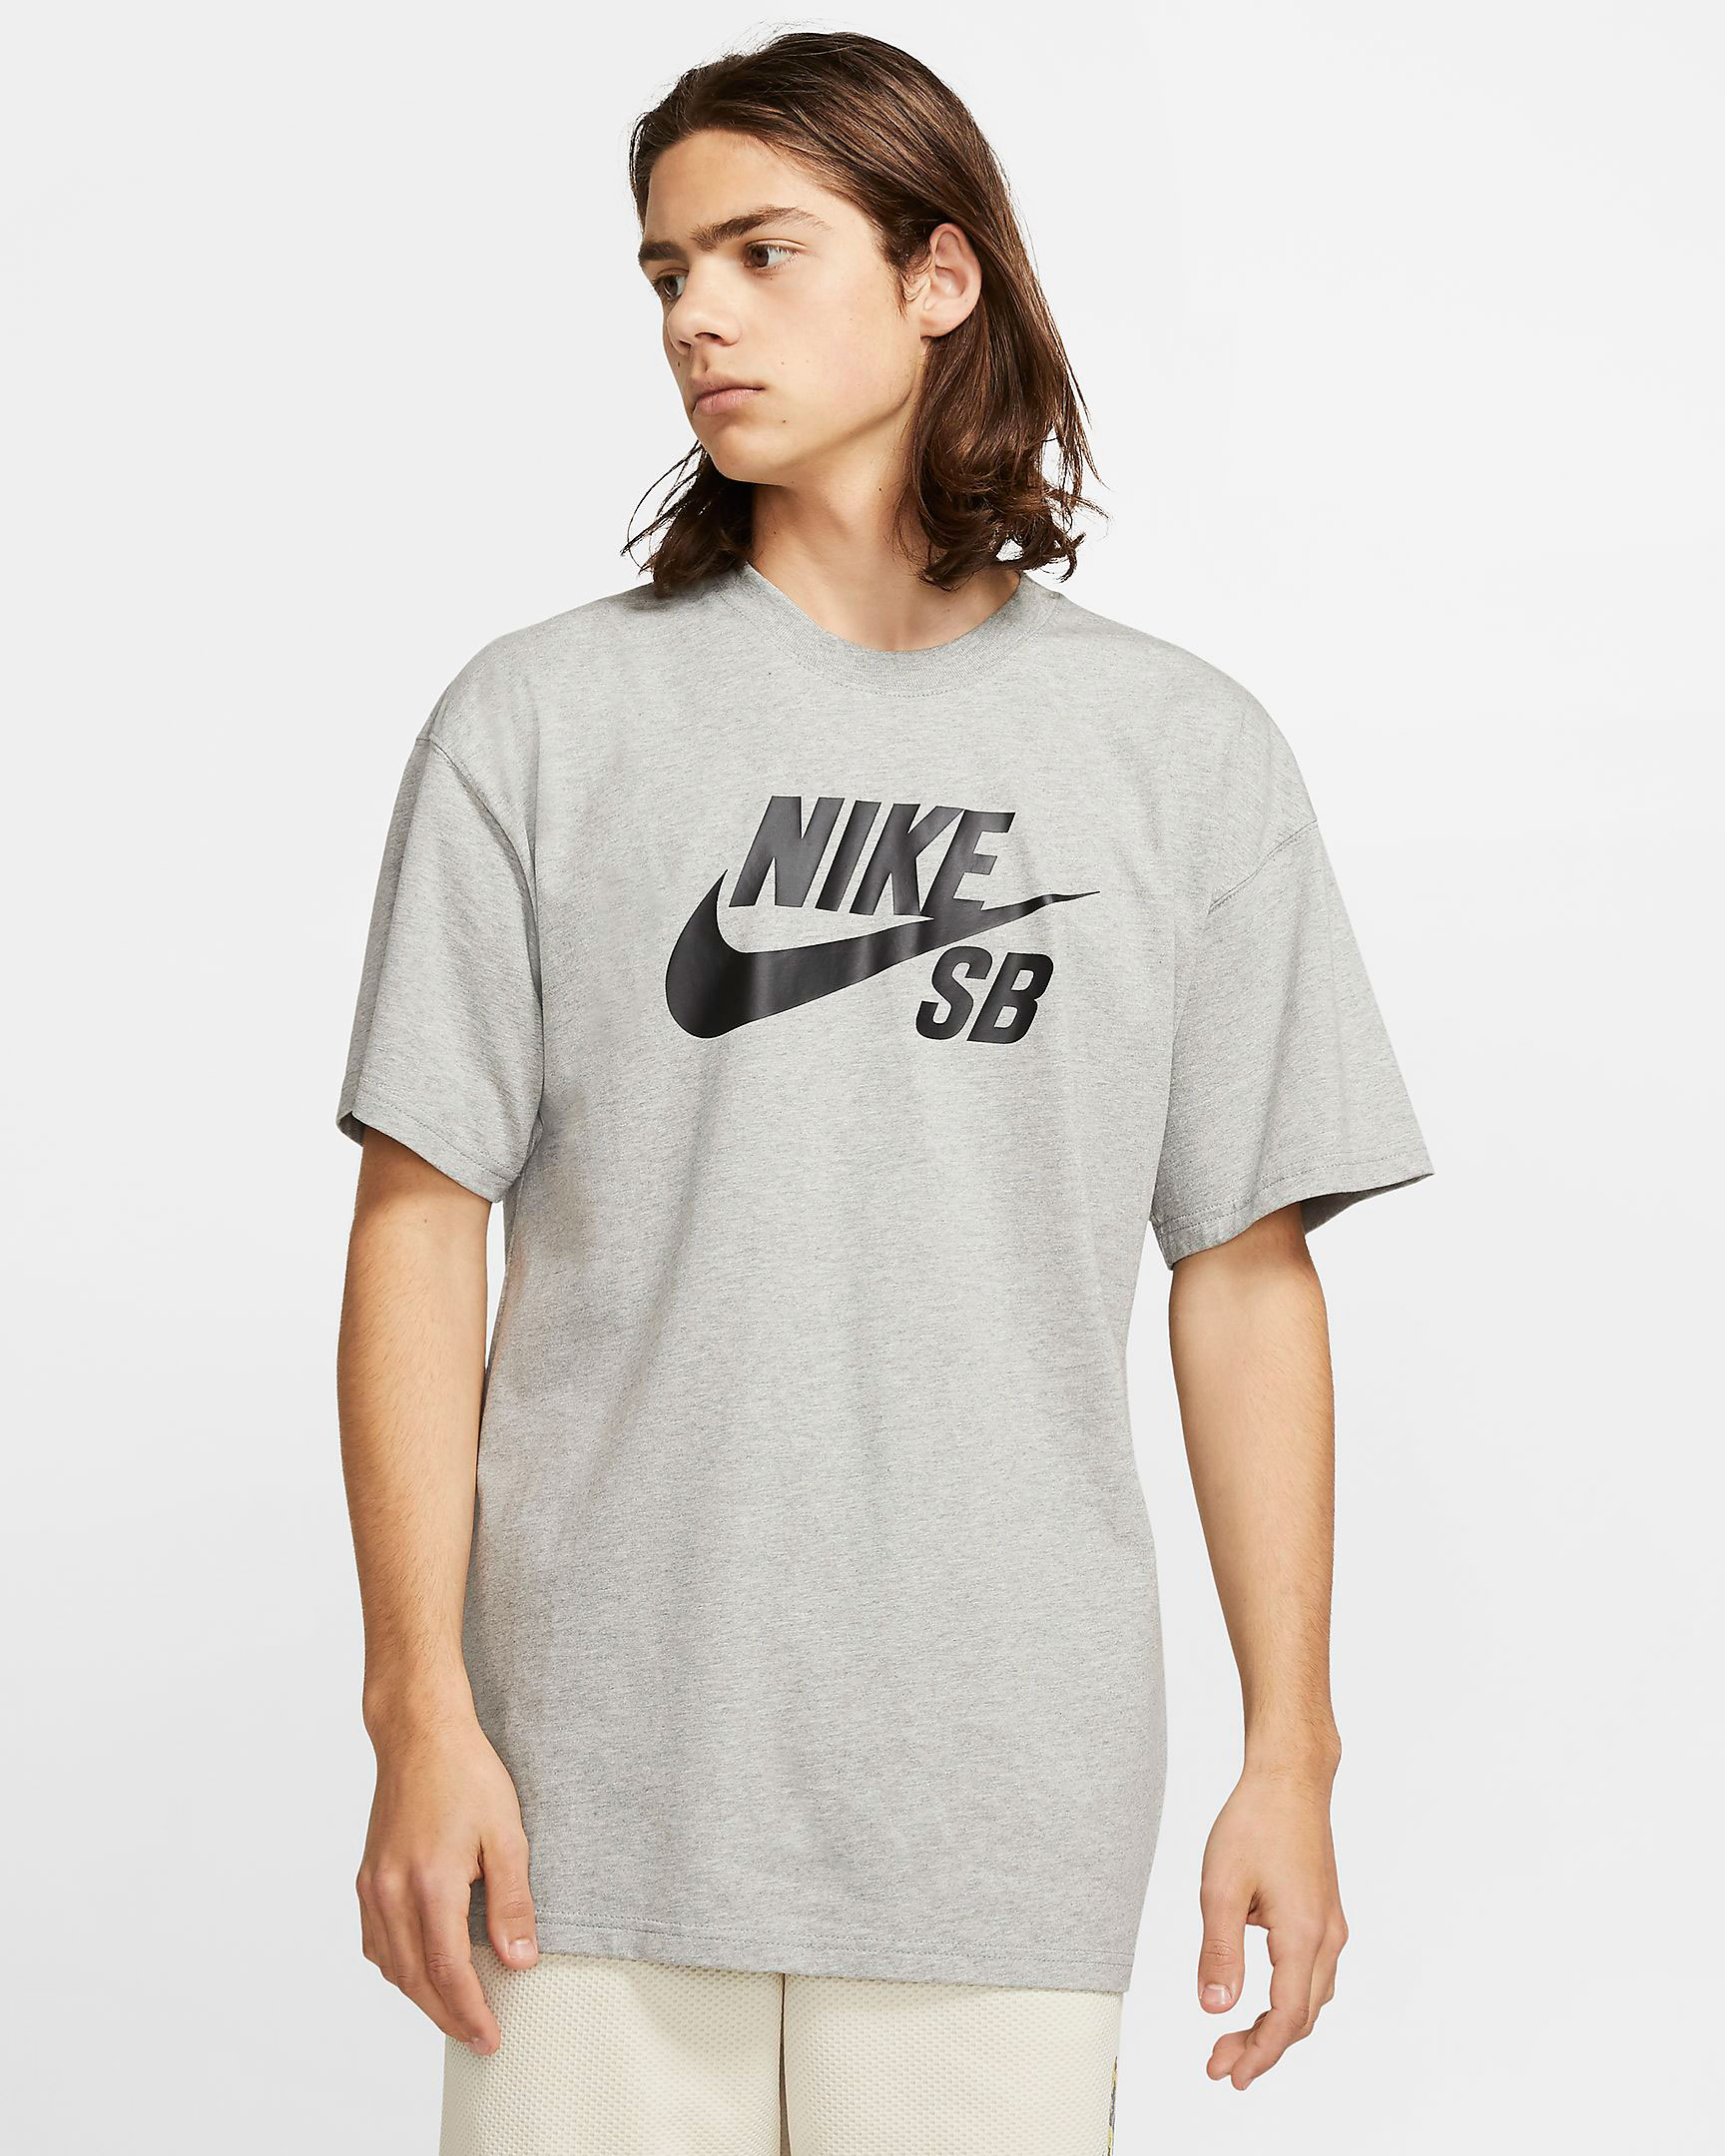 nike-sb-dunk-low-elephant-shirts